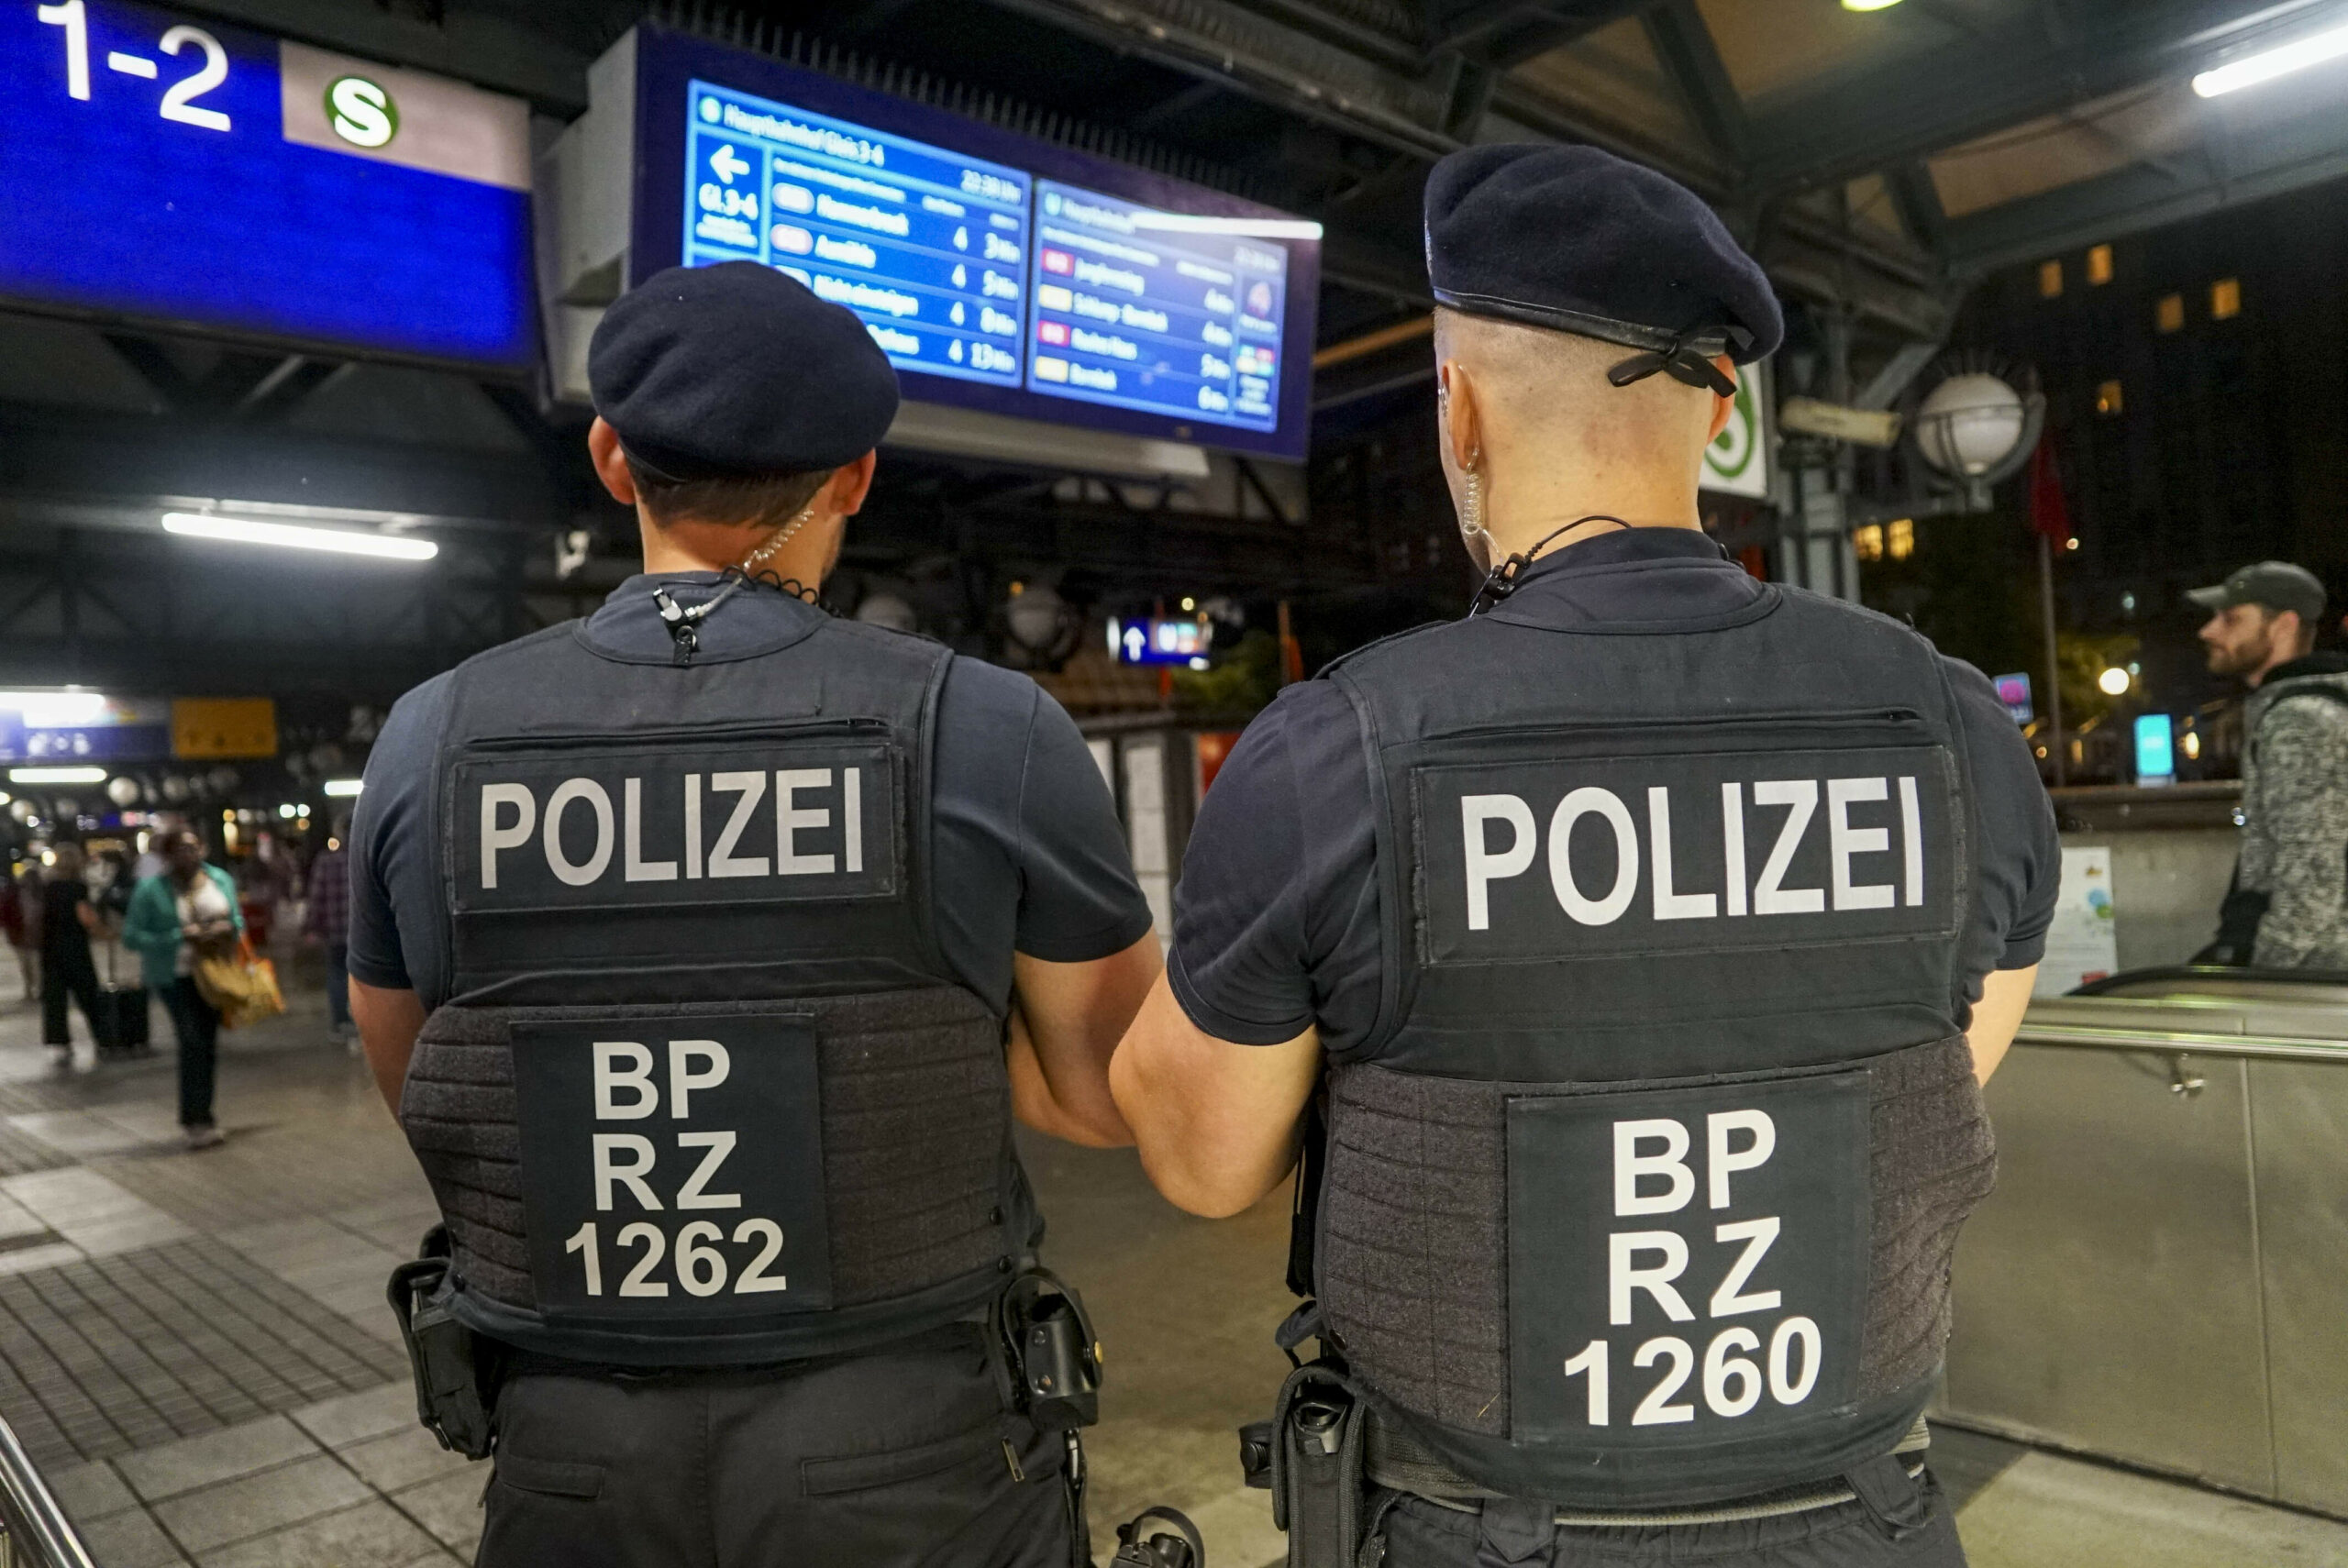 Mann mischt sich am Hauptbahnhof in Kontrolle in – er hatte drei offene haftbefehle und wurde festgenommen